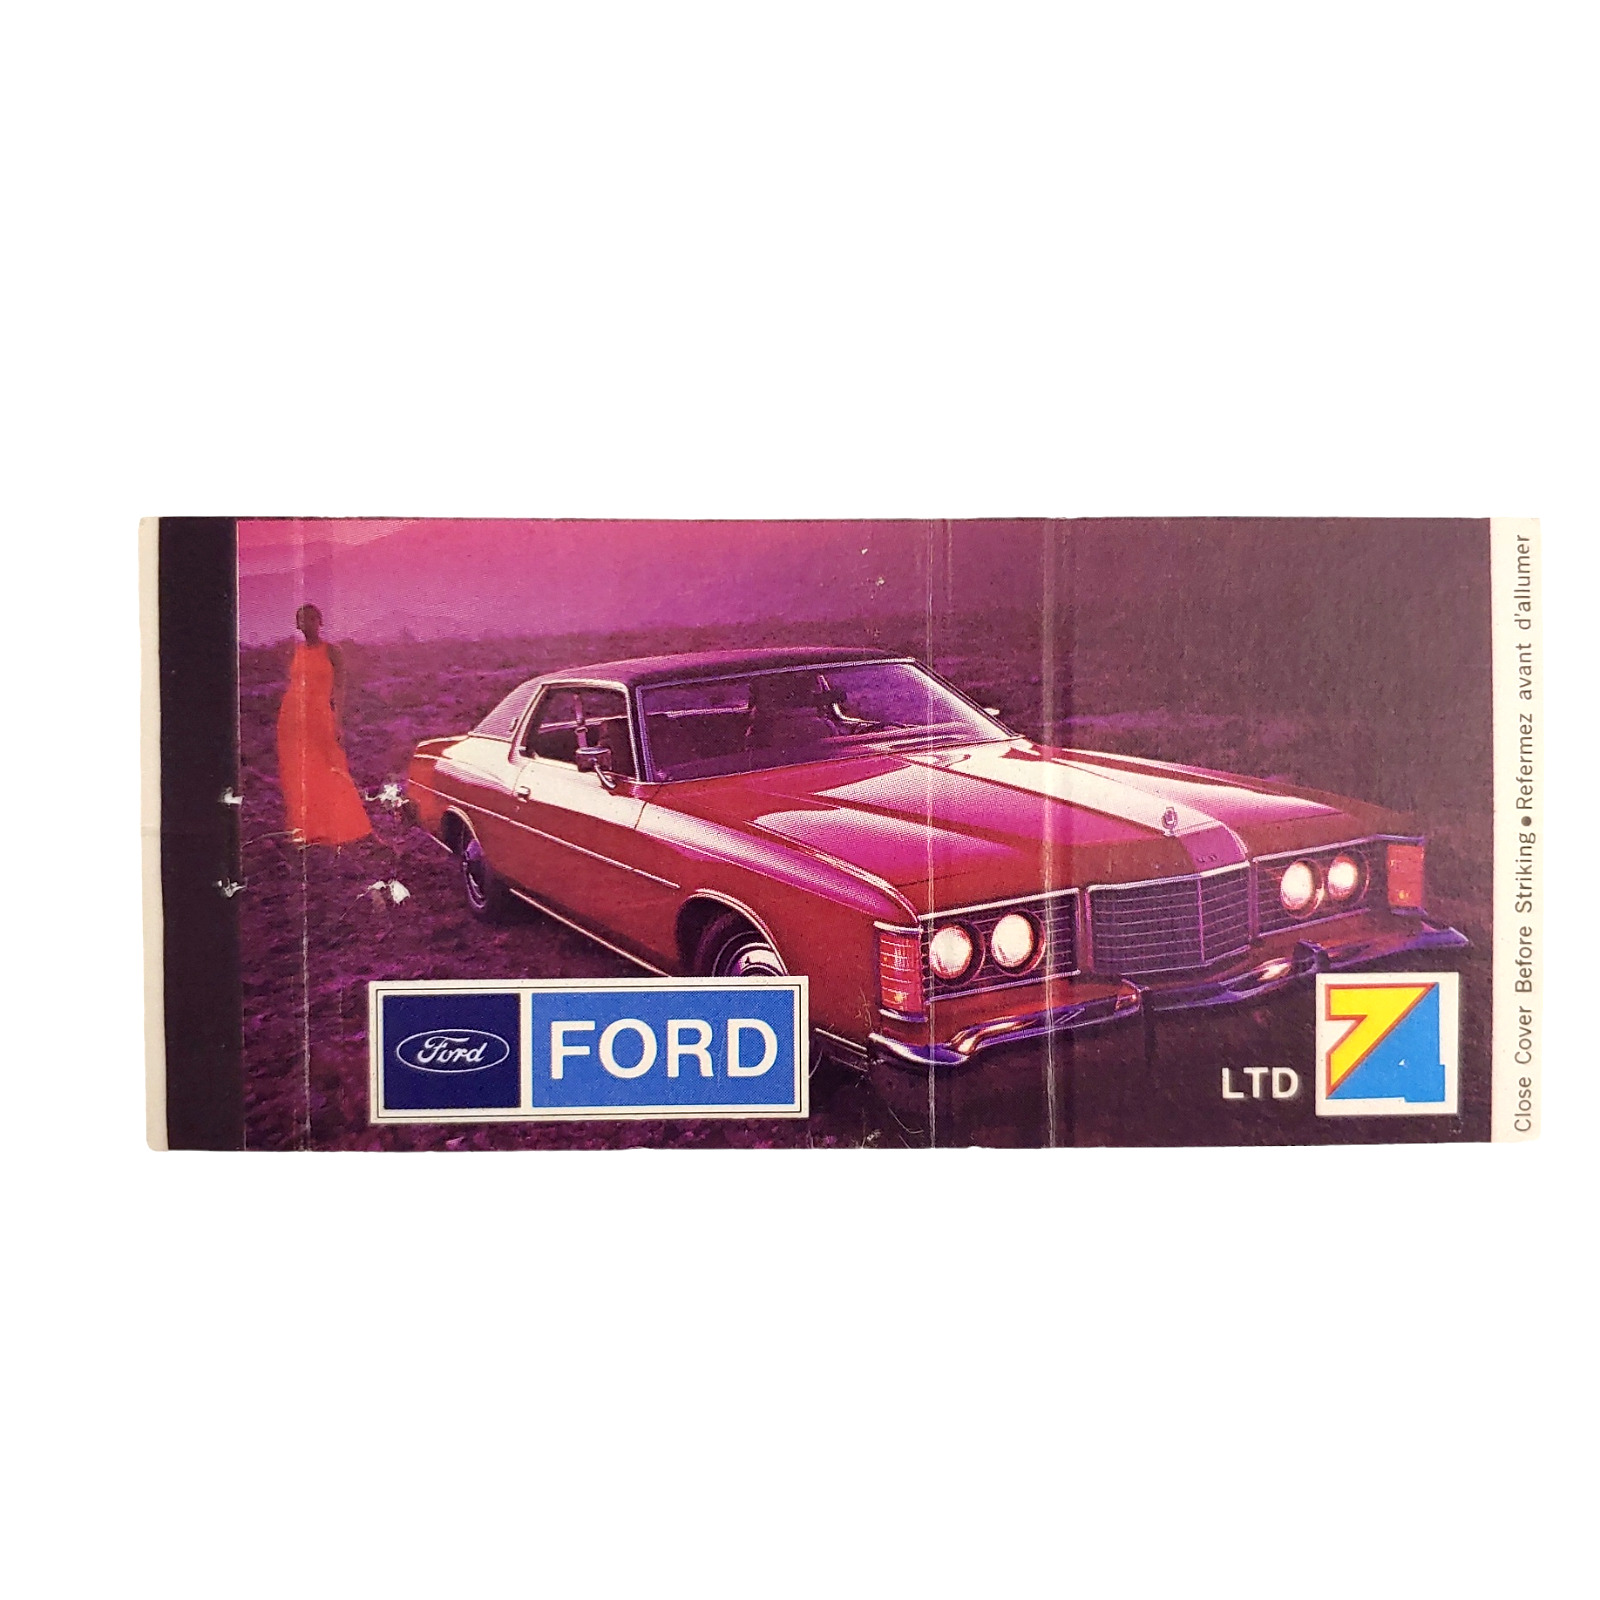 Vintage Matchbook Cover 1974 Ford LTD - Jack Hay Motors Limited